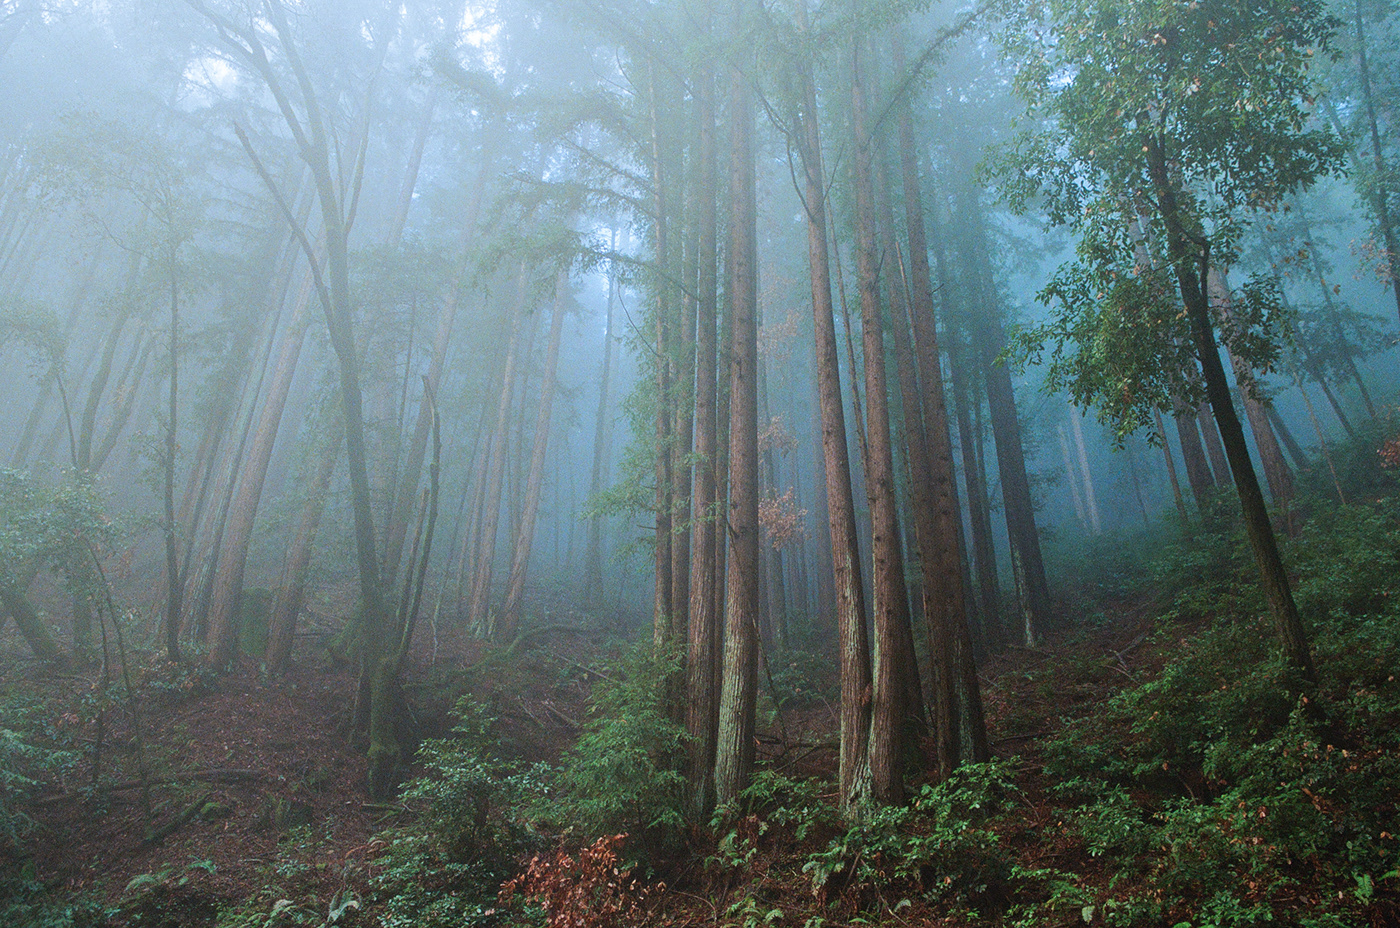 redwoods shrouded in blue mist
